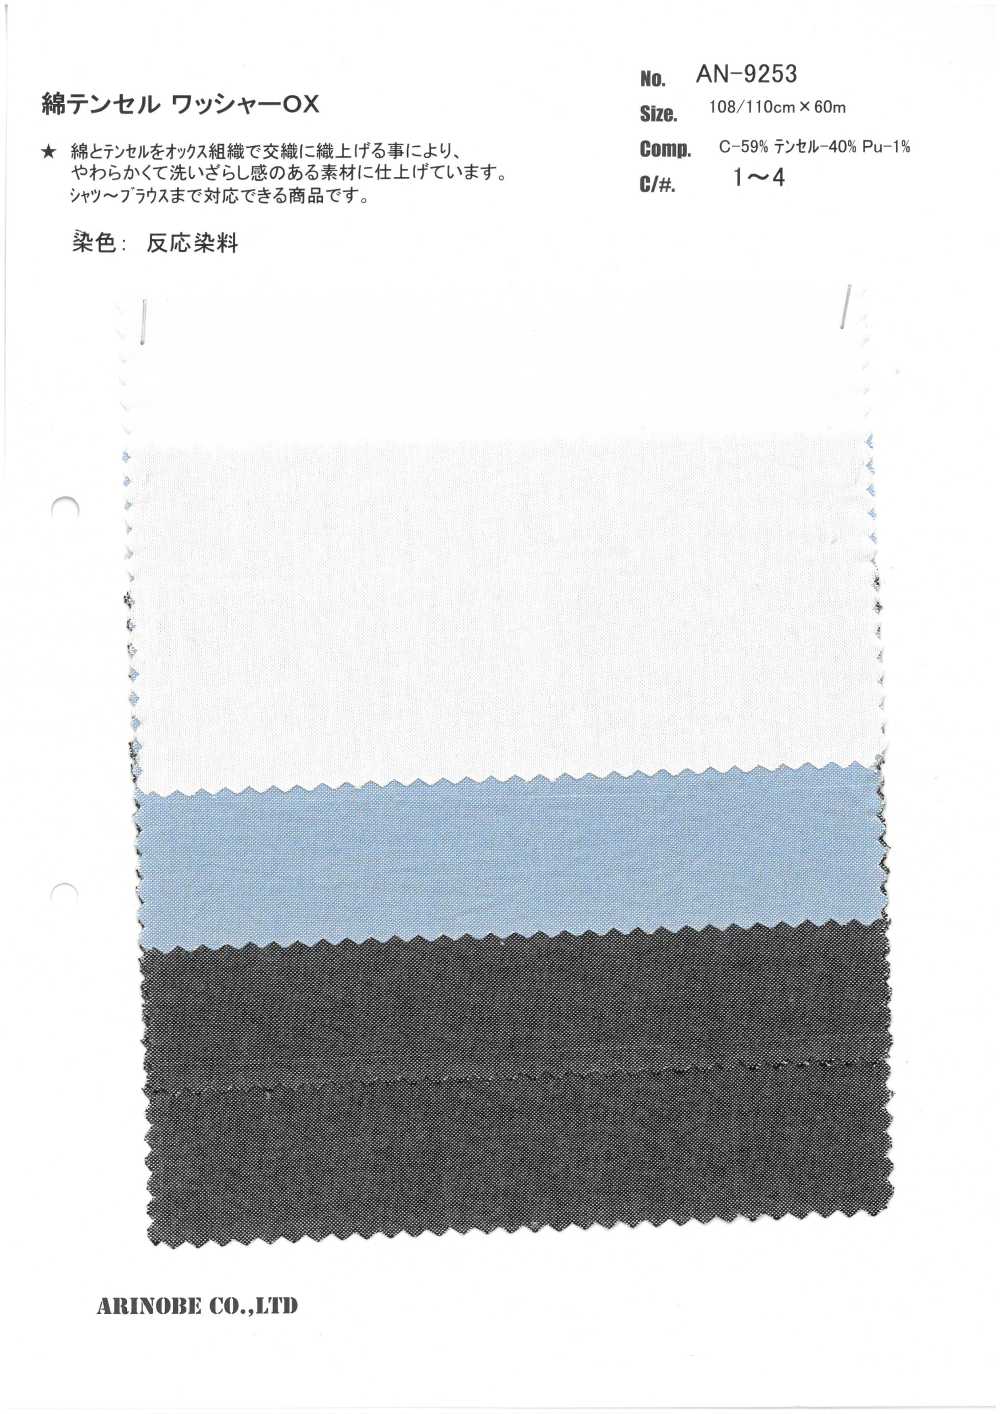 AN-9253 Xử Lý Máy Giặt Cotton / Tencel OX[Vải] ARINOBE CO., LTD.